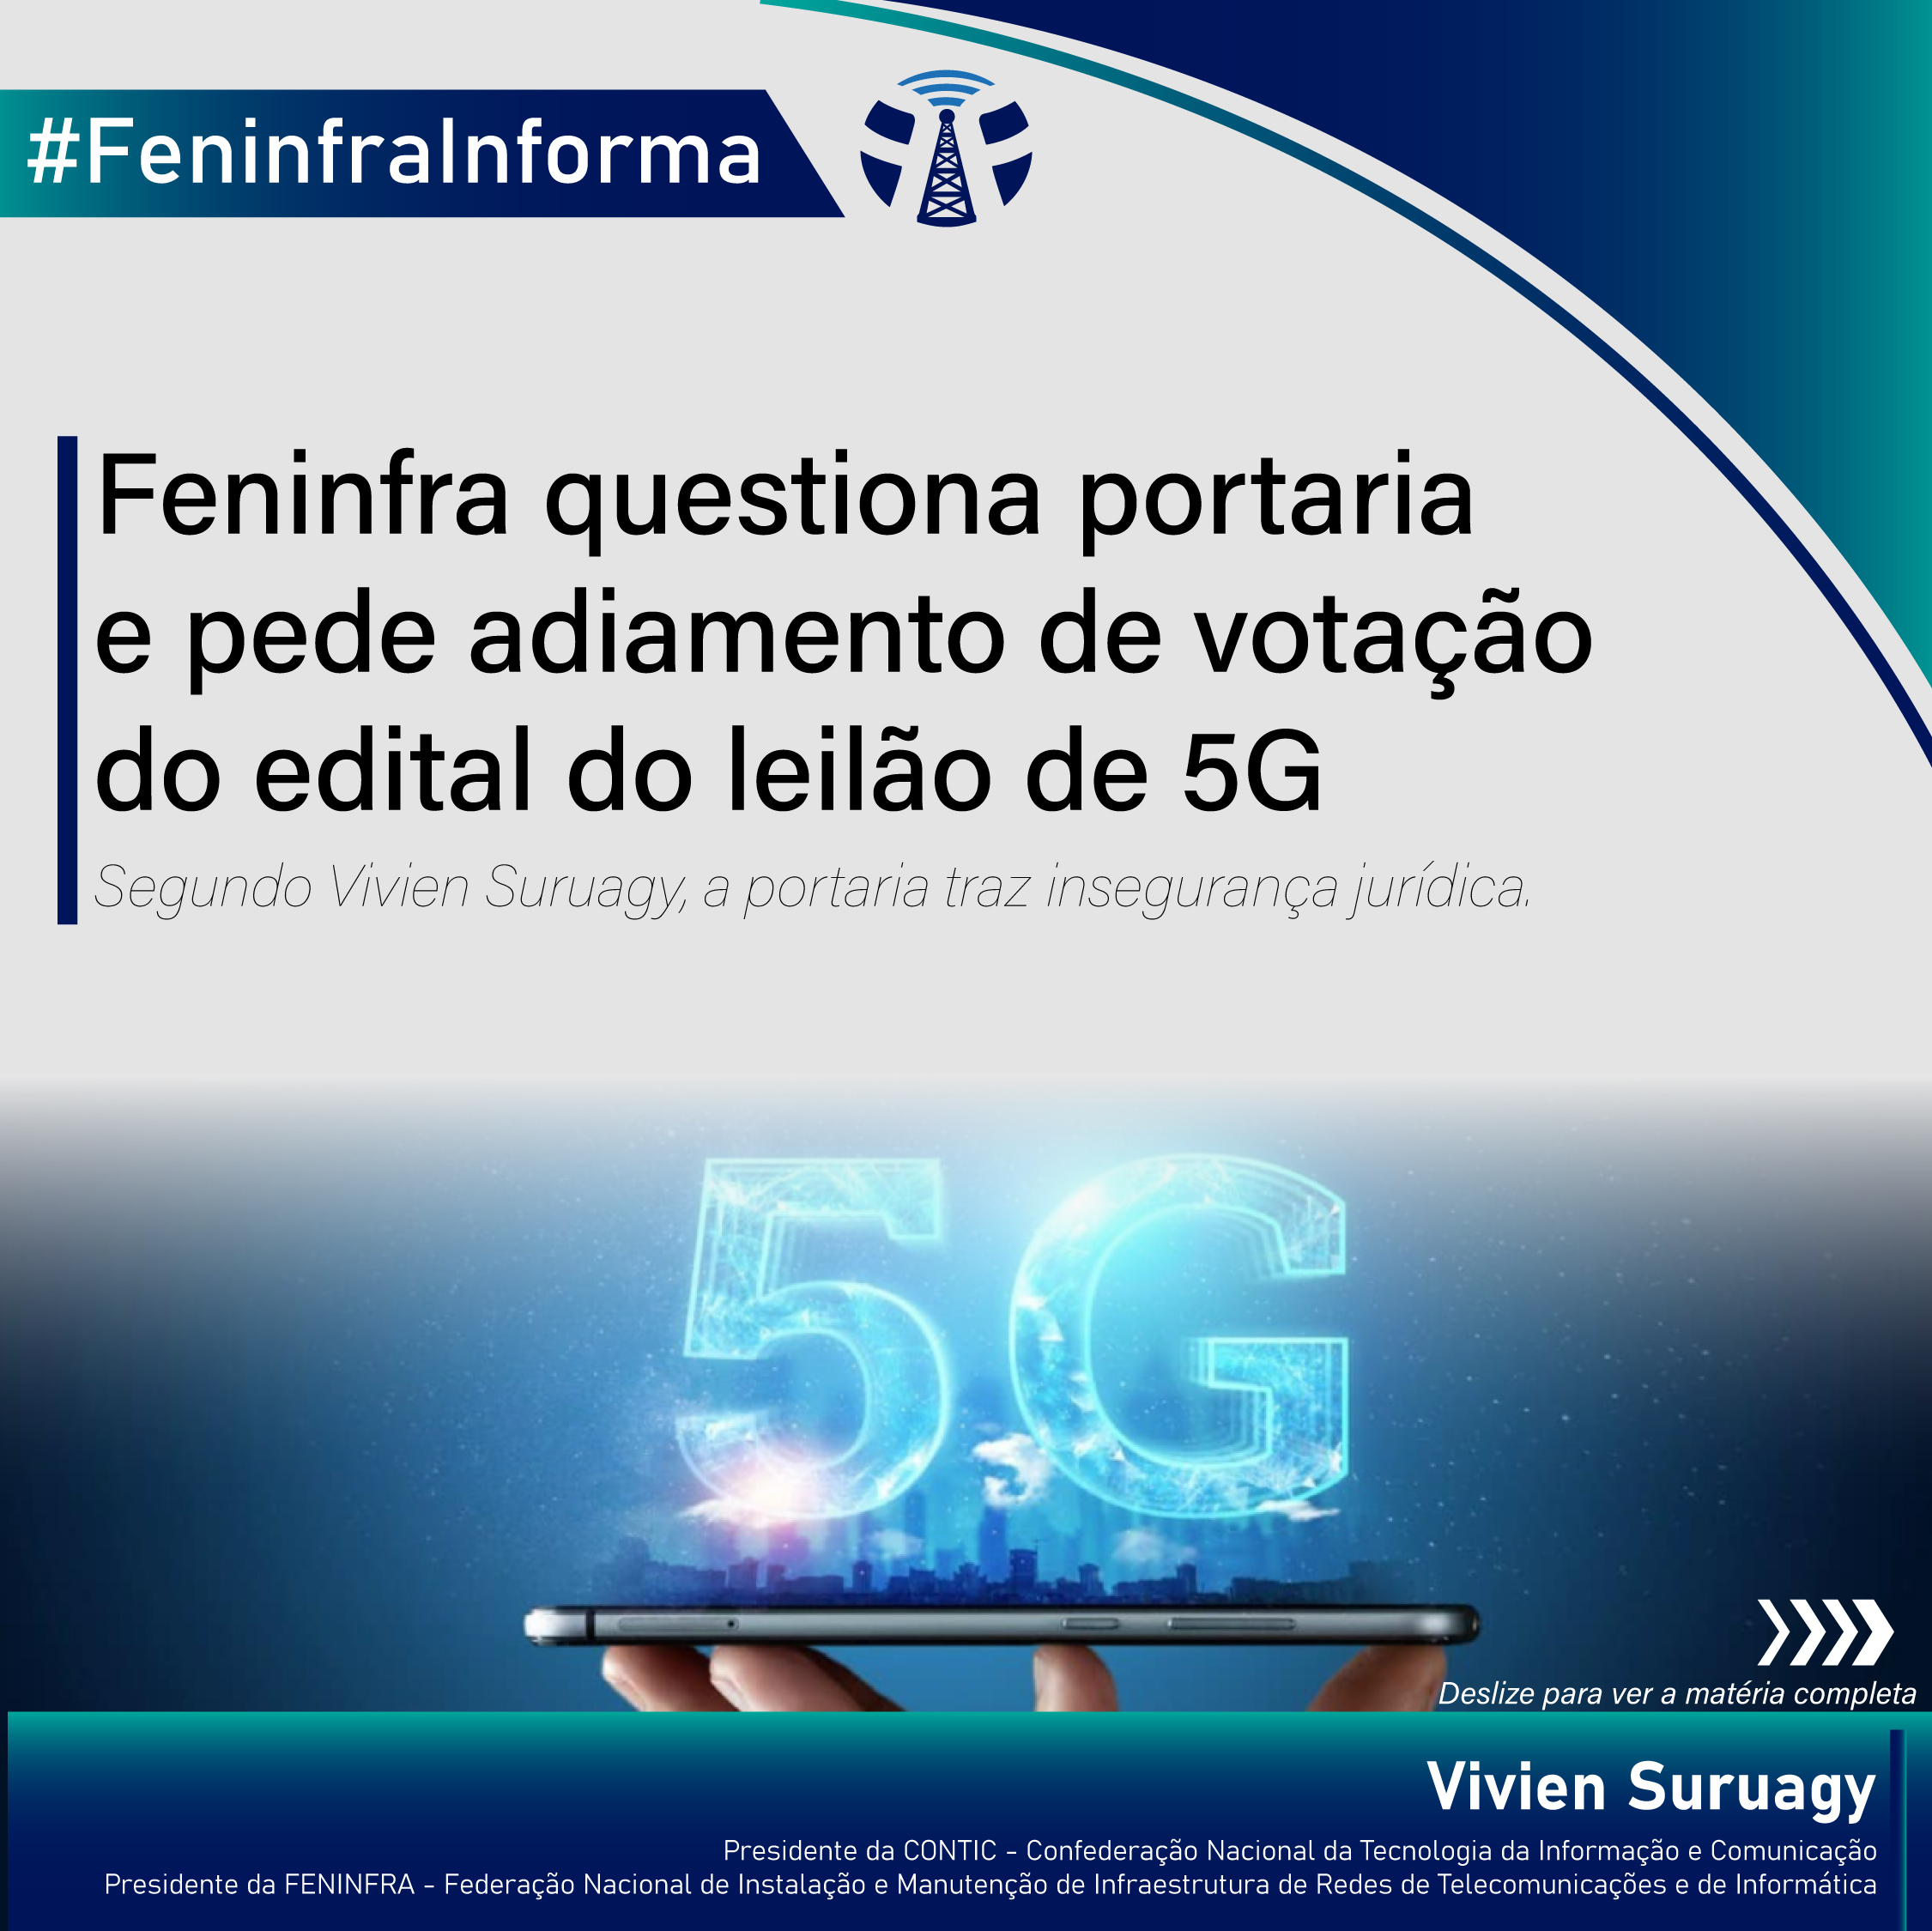 Feninfra questiona portaria e pede adiamento de votação do edital do leilão de 5G